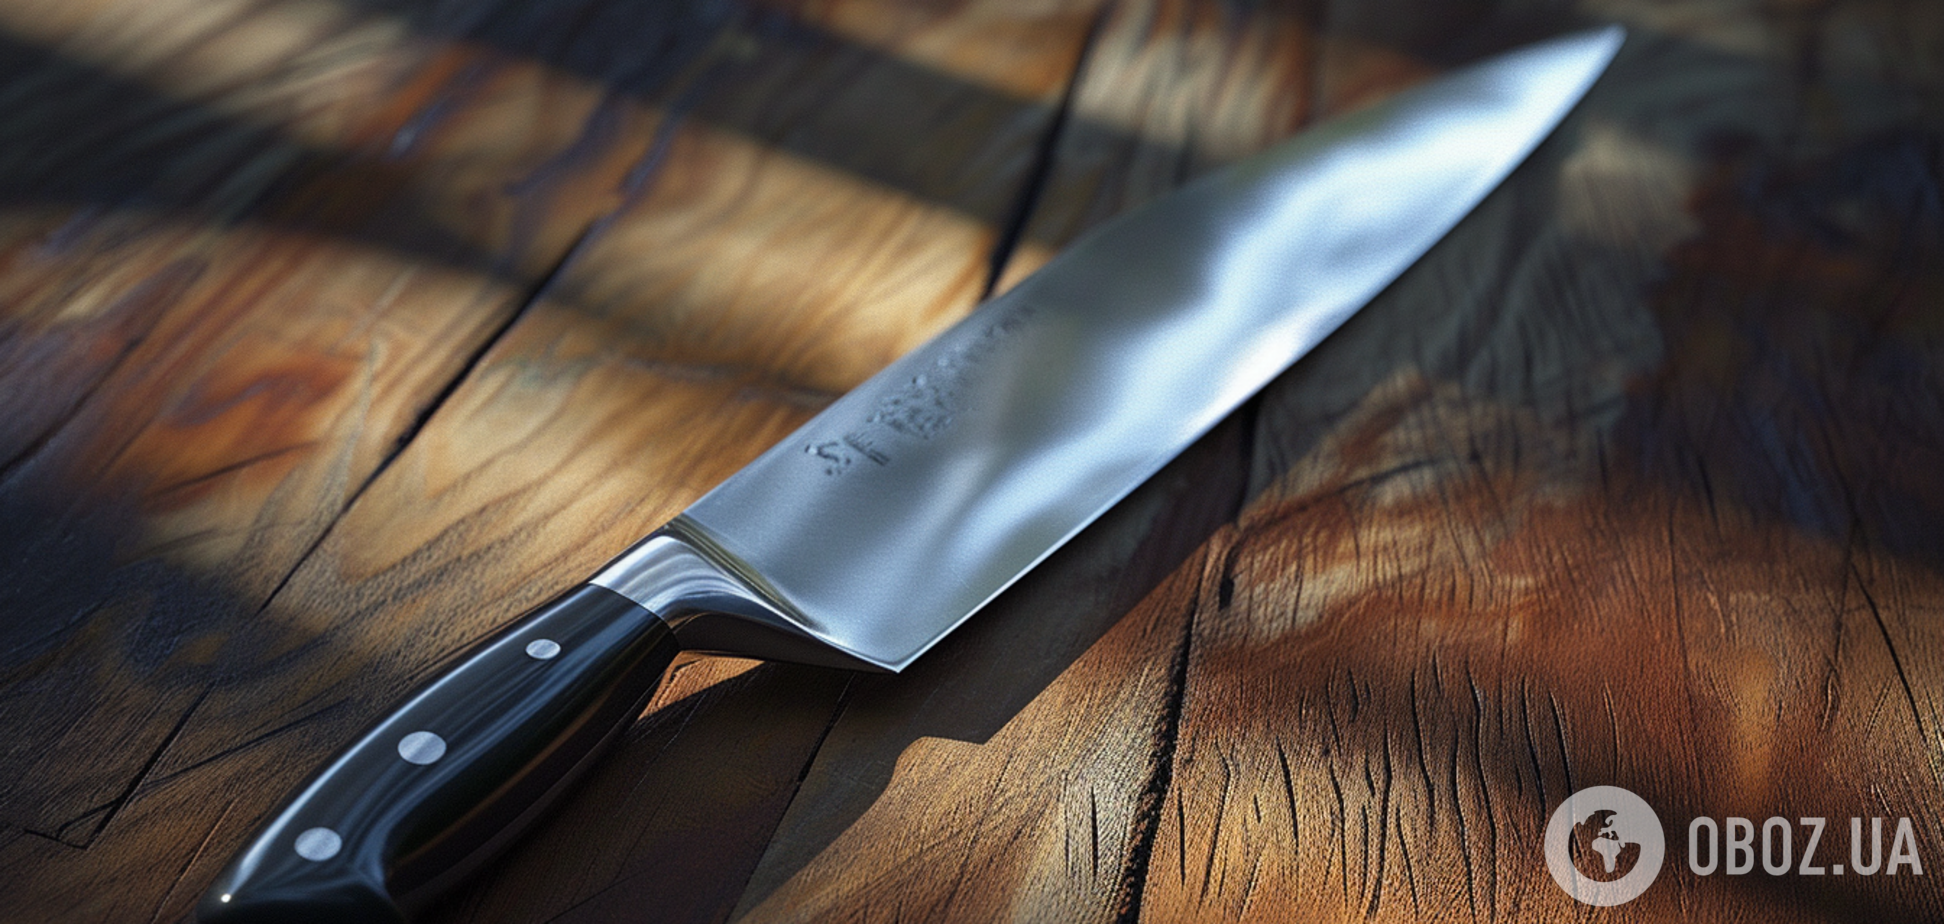 Як швидко нагострити ножі: хитрість, про яку мало хто знає